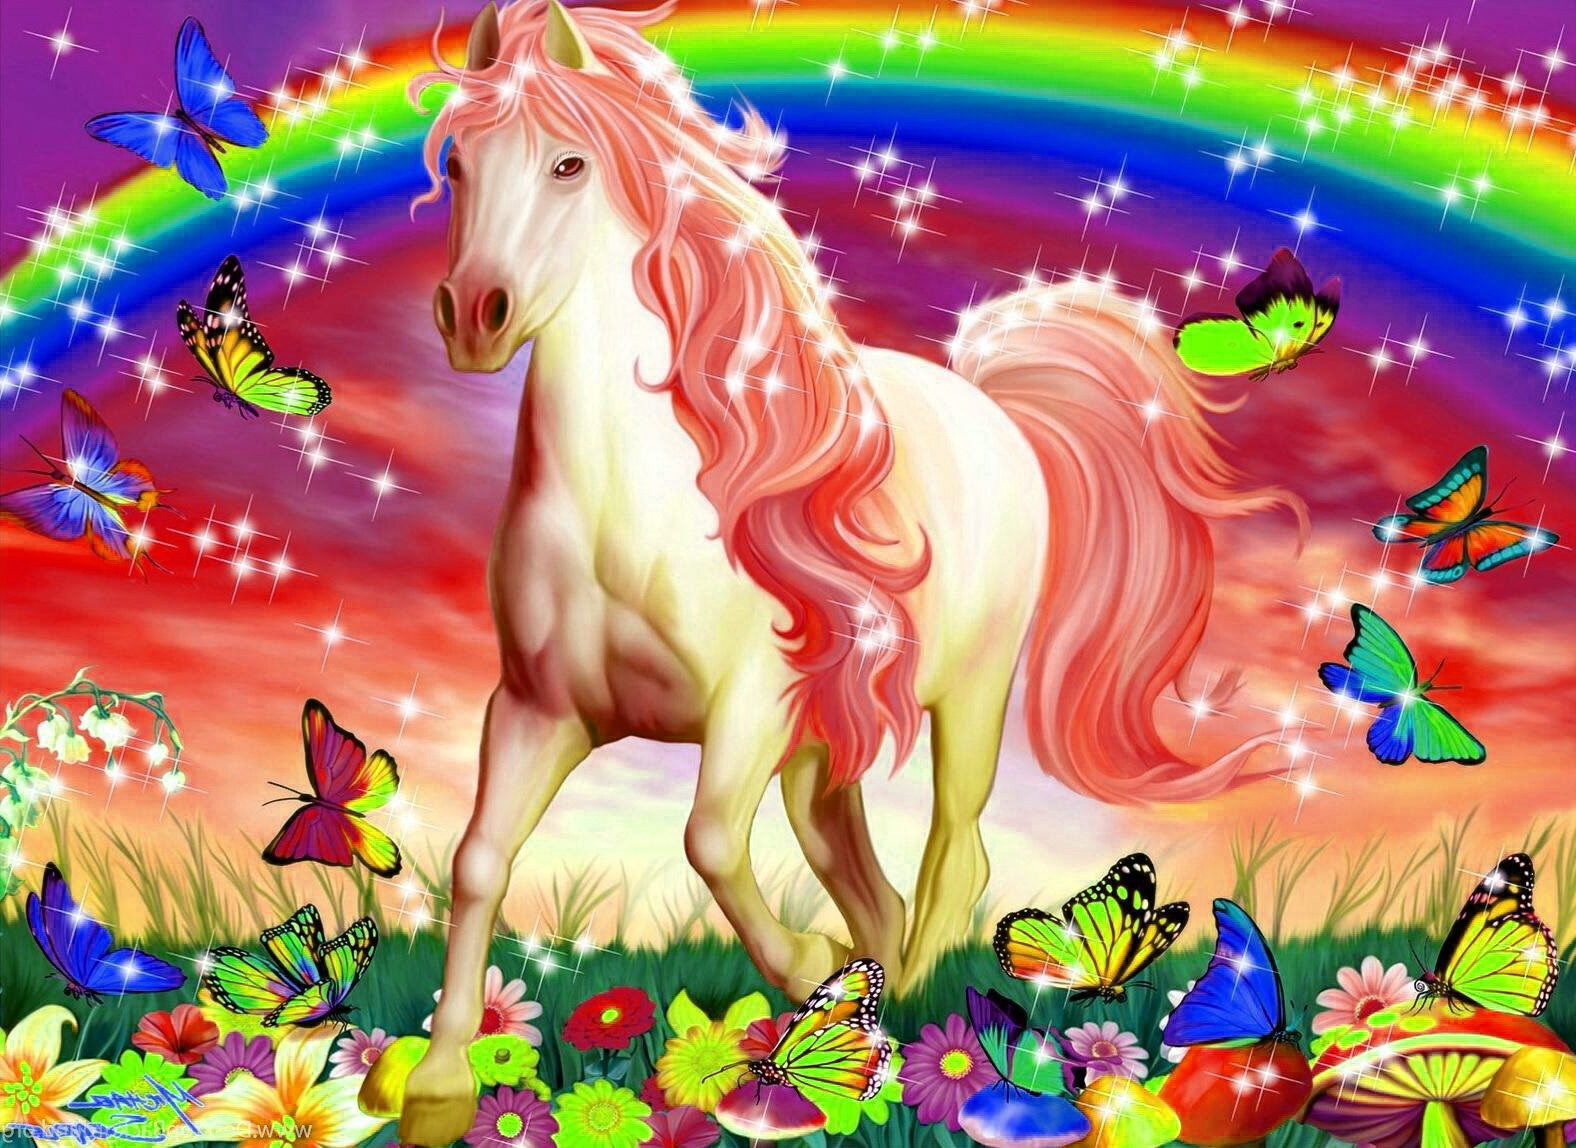 Download Cute Glitter Unicorn Wallpaper Free for Android - Cute Glitter Unicorn  Wallpaper APK Download - STEPrimo.com